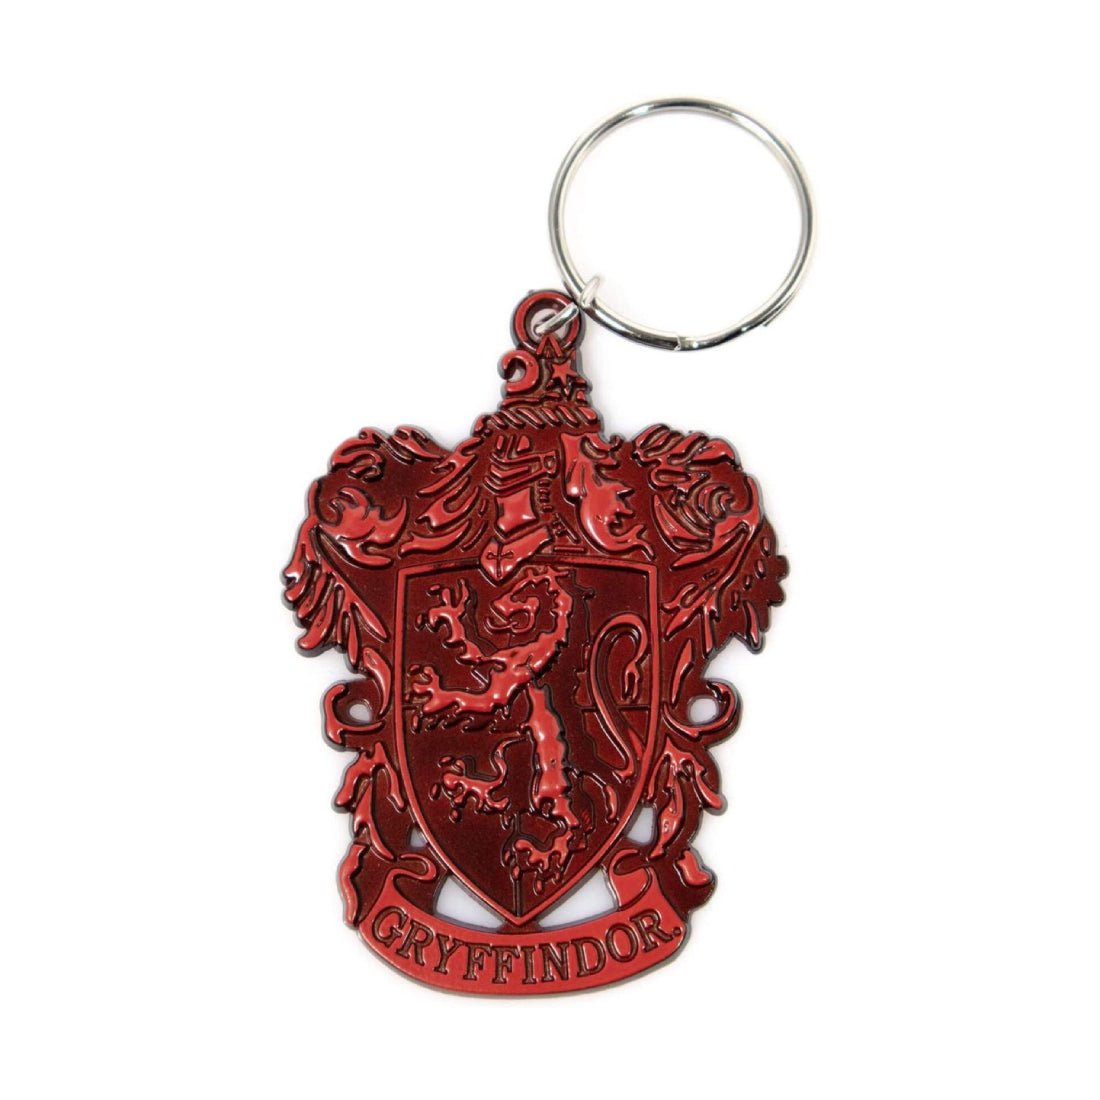 Harry Potter - Gryffindor Crest Metal Keychain - أكسسوار - Store 974 | ستور ٩٧٤